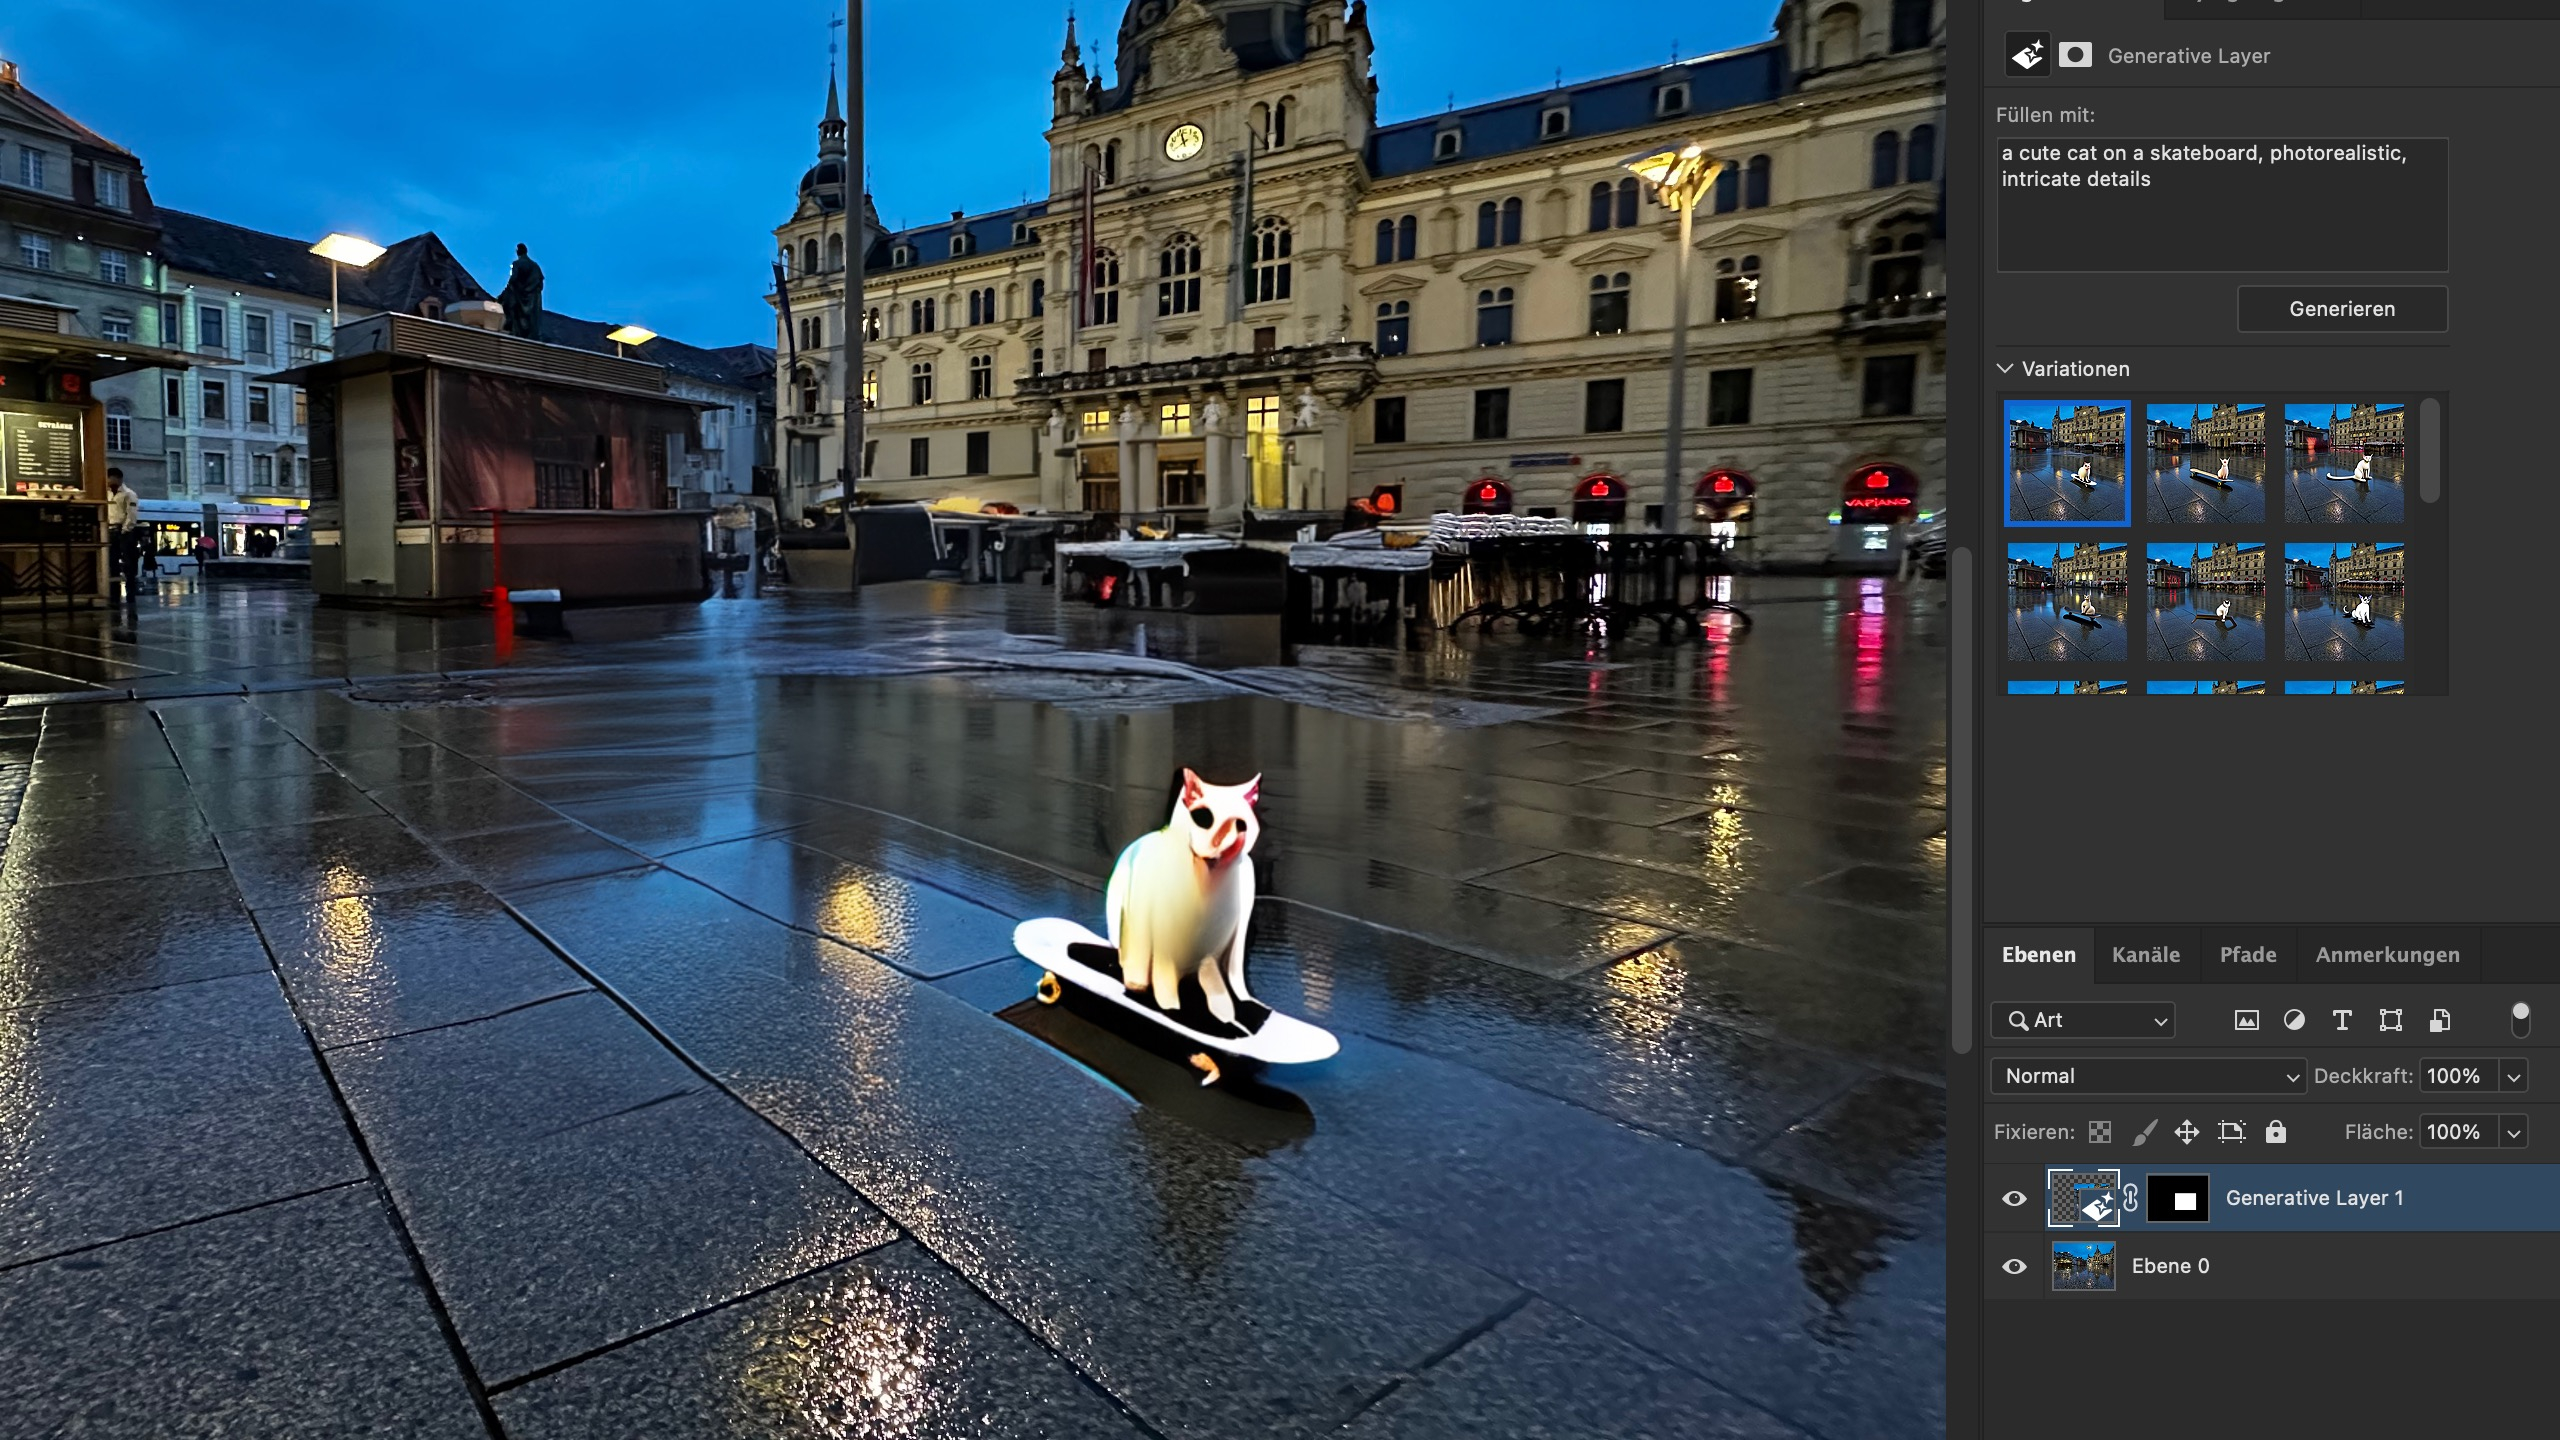 Die Katze auf dem Skateboard ist eingefügt. Die automatisch eingefügte Spiegelung auf dem nassen Untergrund meines Fotos ist beeindruckend – Tiere und Menschen gehen aber im Allgemeinen noch nicht so gut. Da muss die generative Füllung noch zu Midjourney und Stable Diffusion aufschließen.